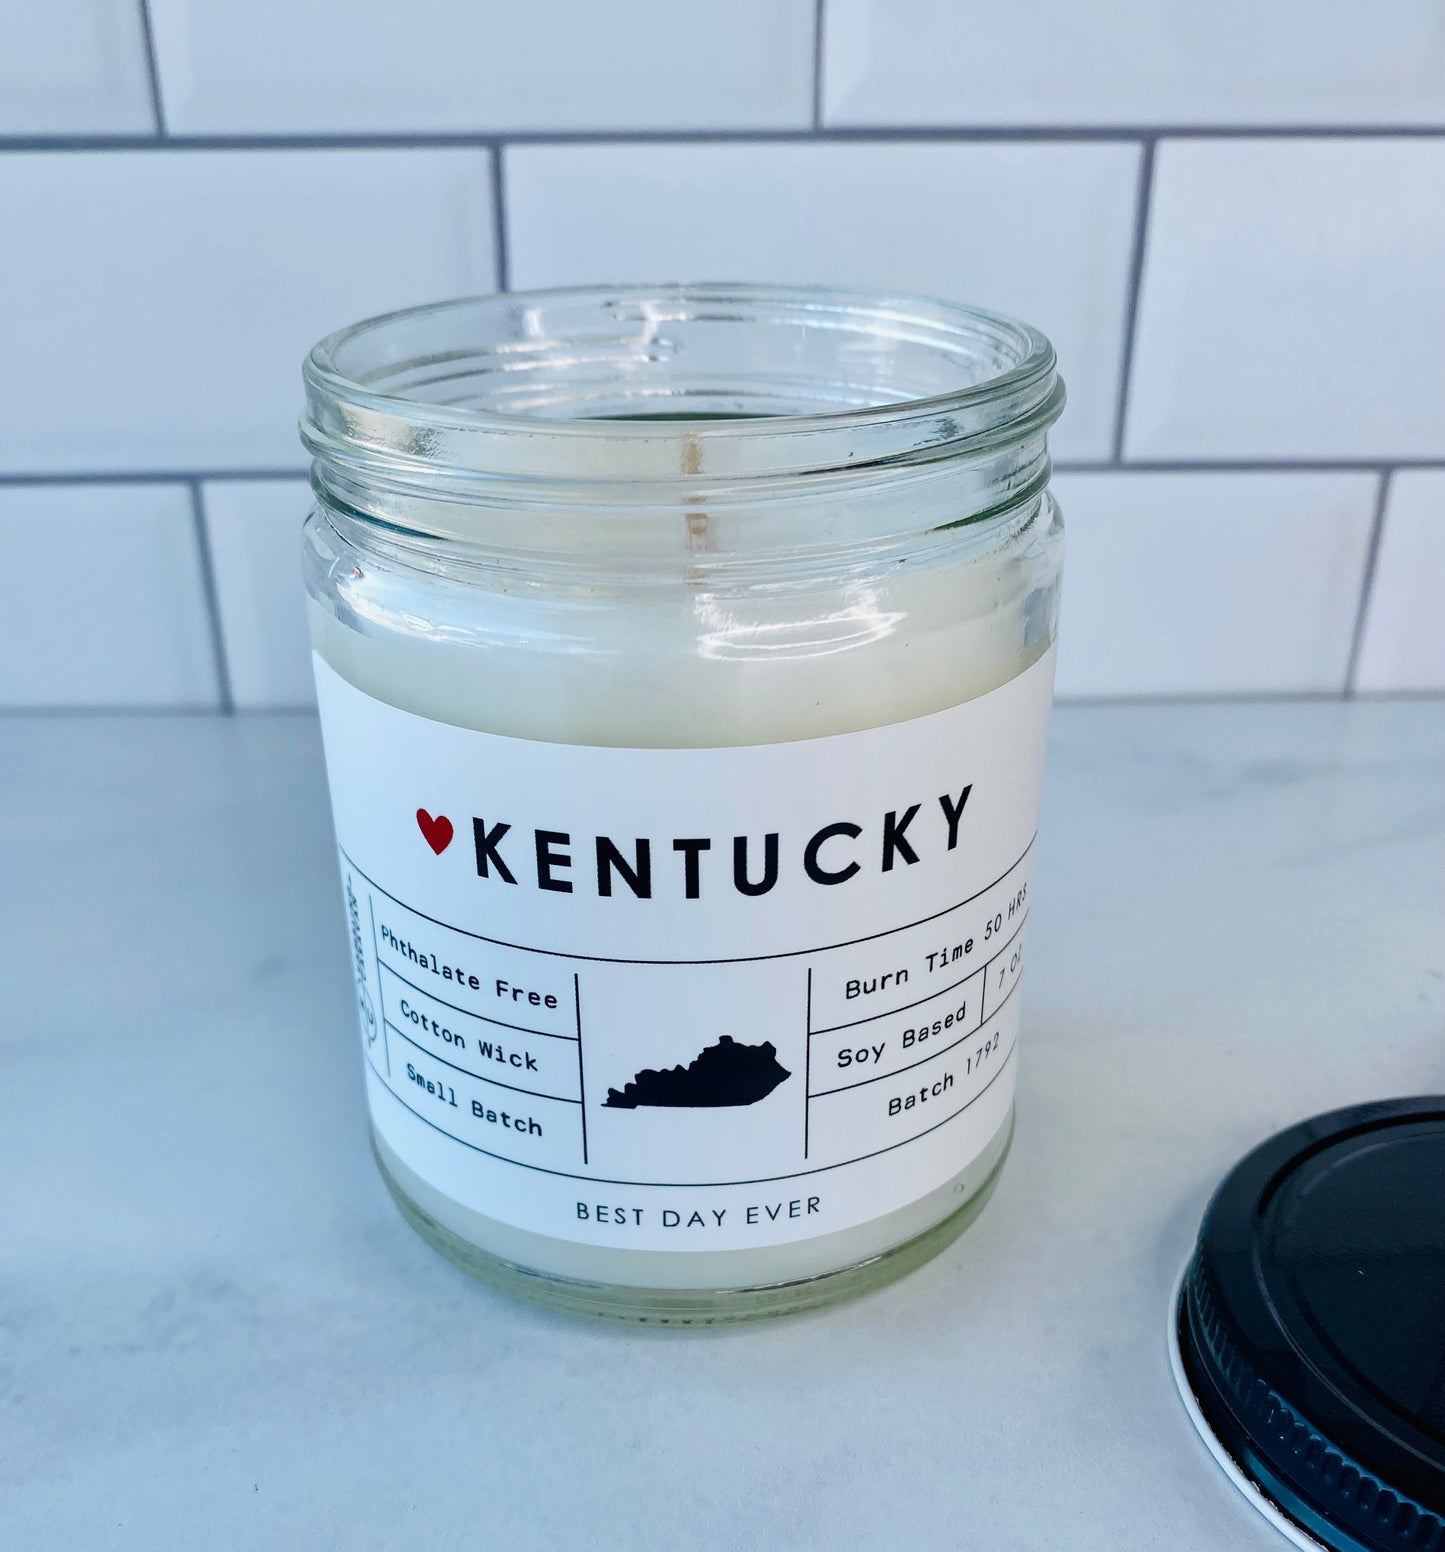 Kentucky Candle